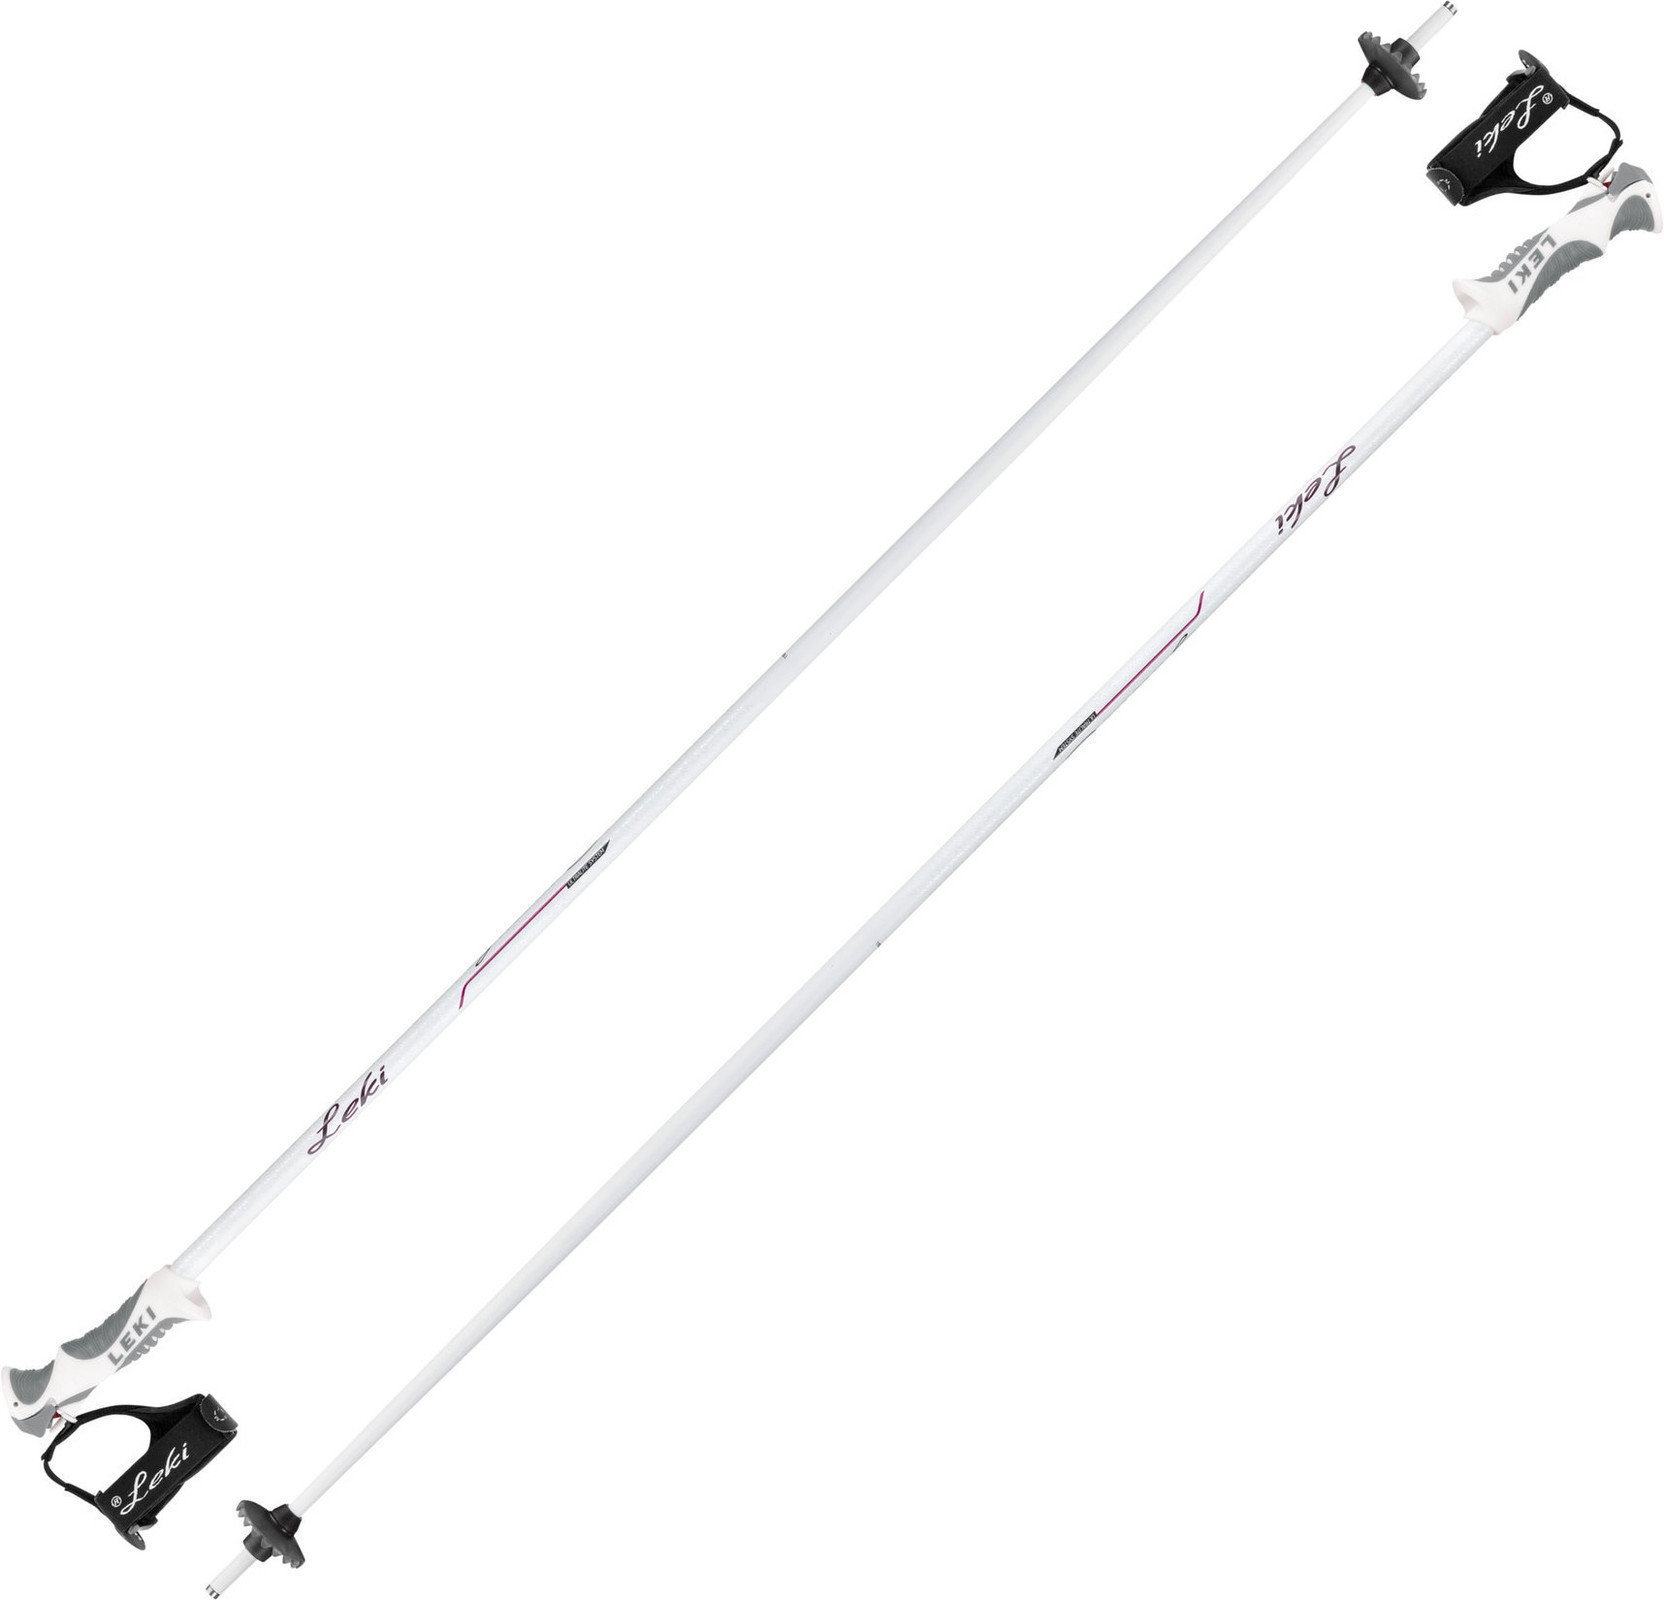 Ski-stokken Leki Giulia S White/Anthracite/Berry 125 cm Ski-stokken